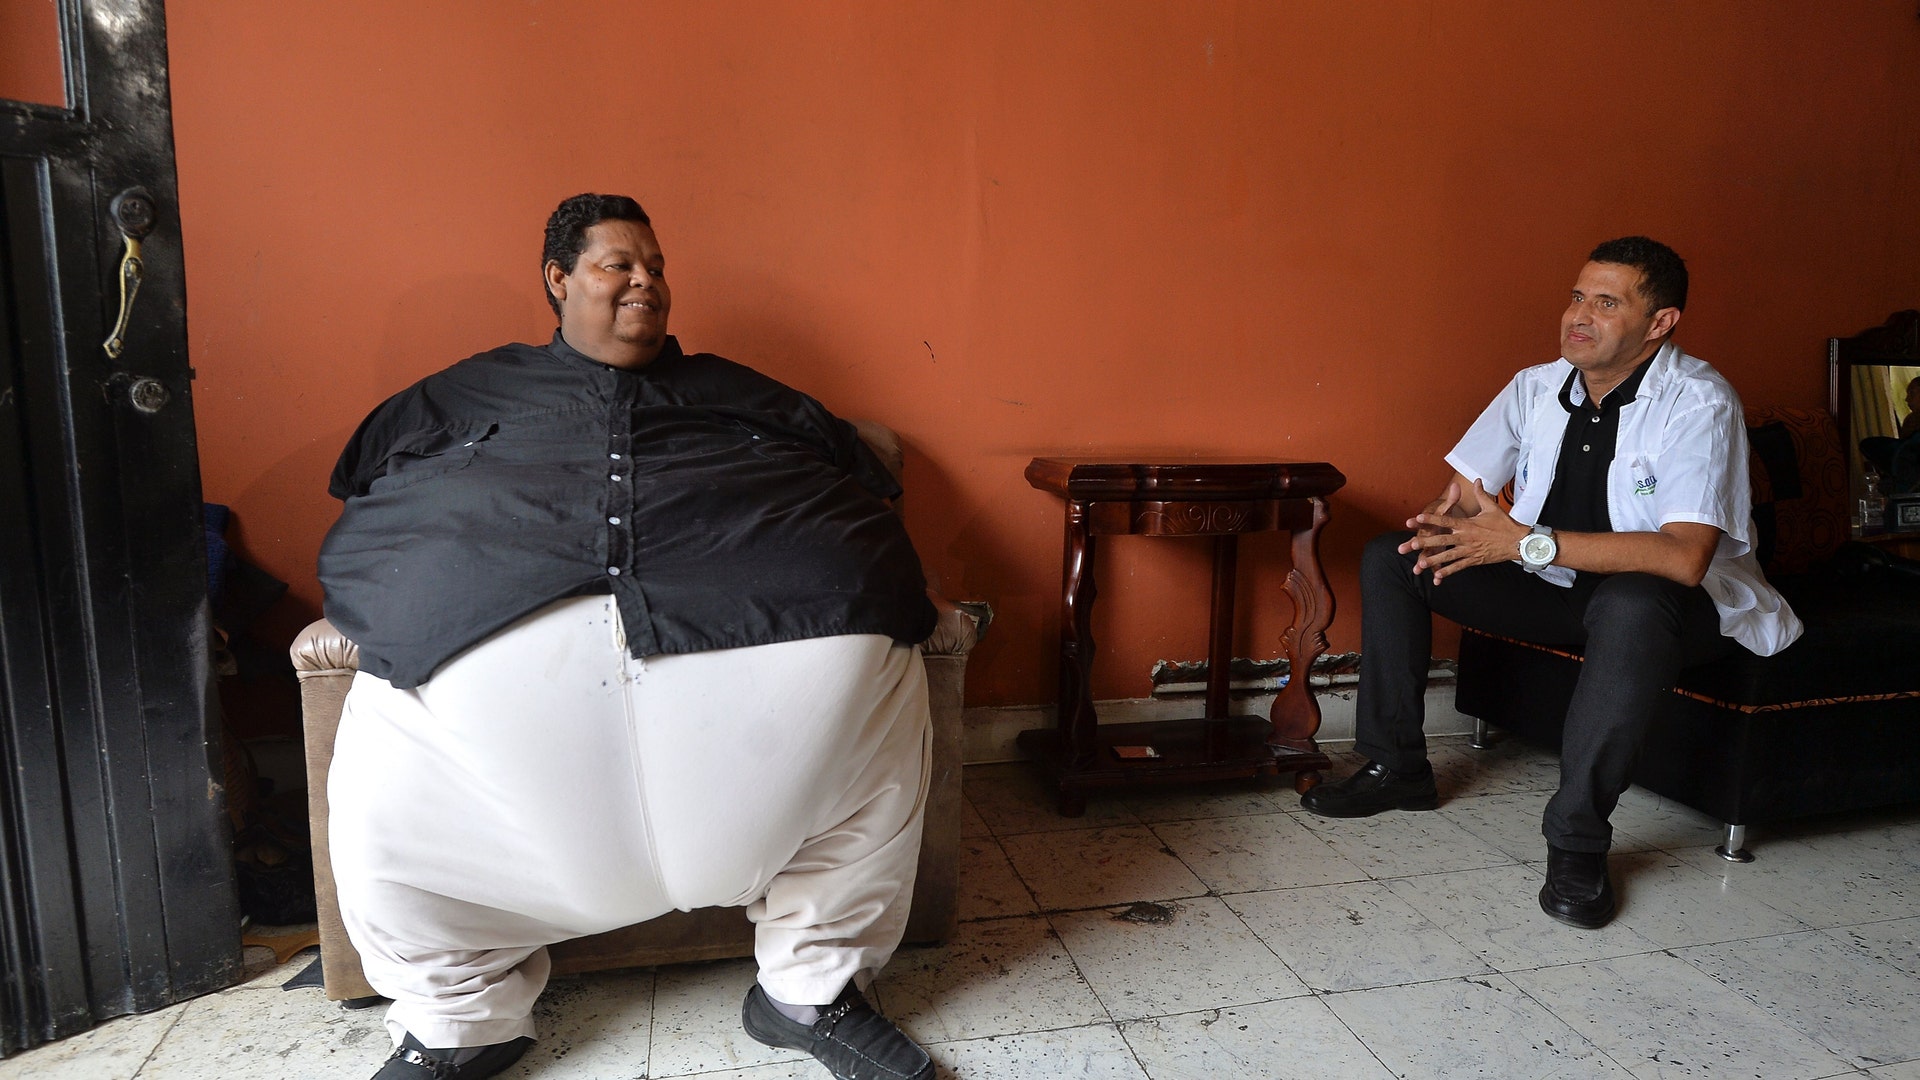 Самый тяжелый человеческий. Хуан Педро Франко 600 кг.